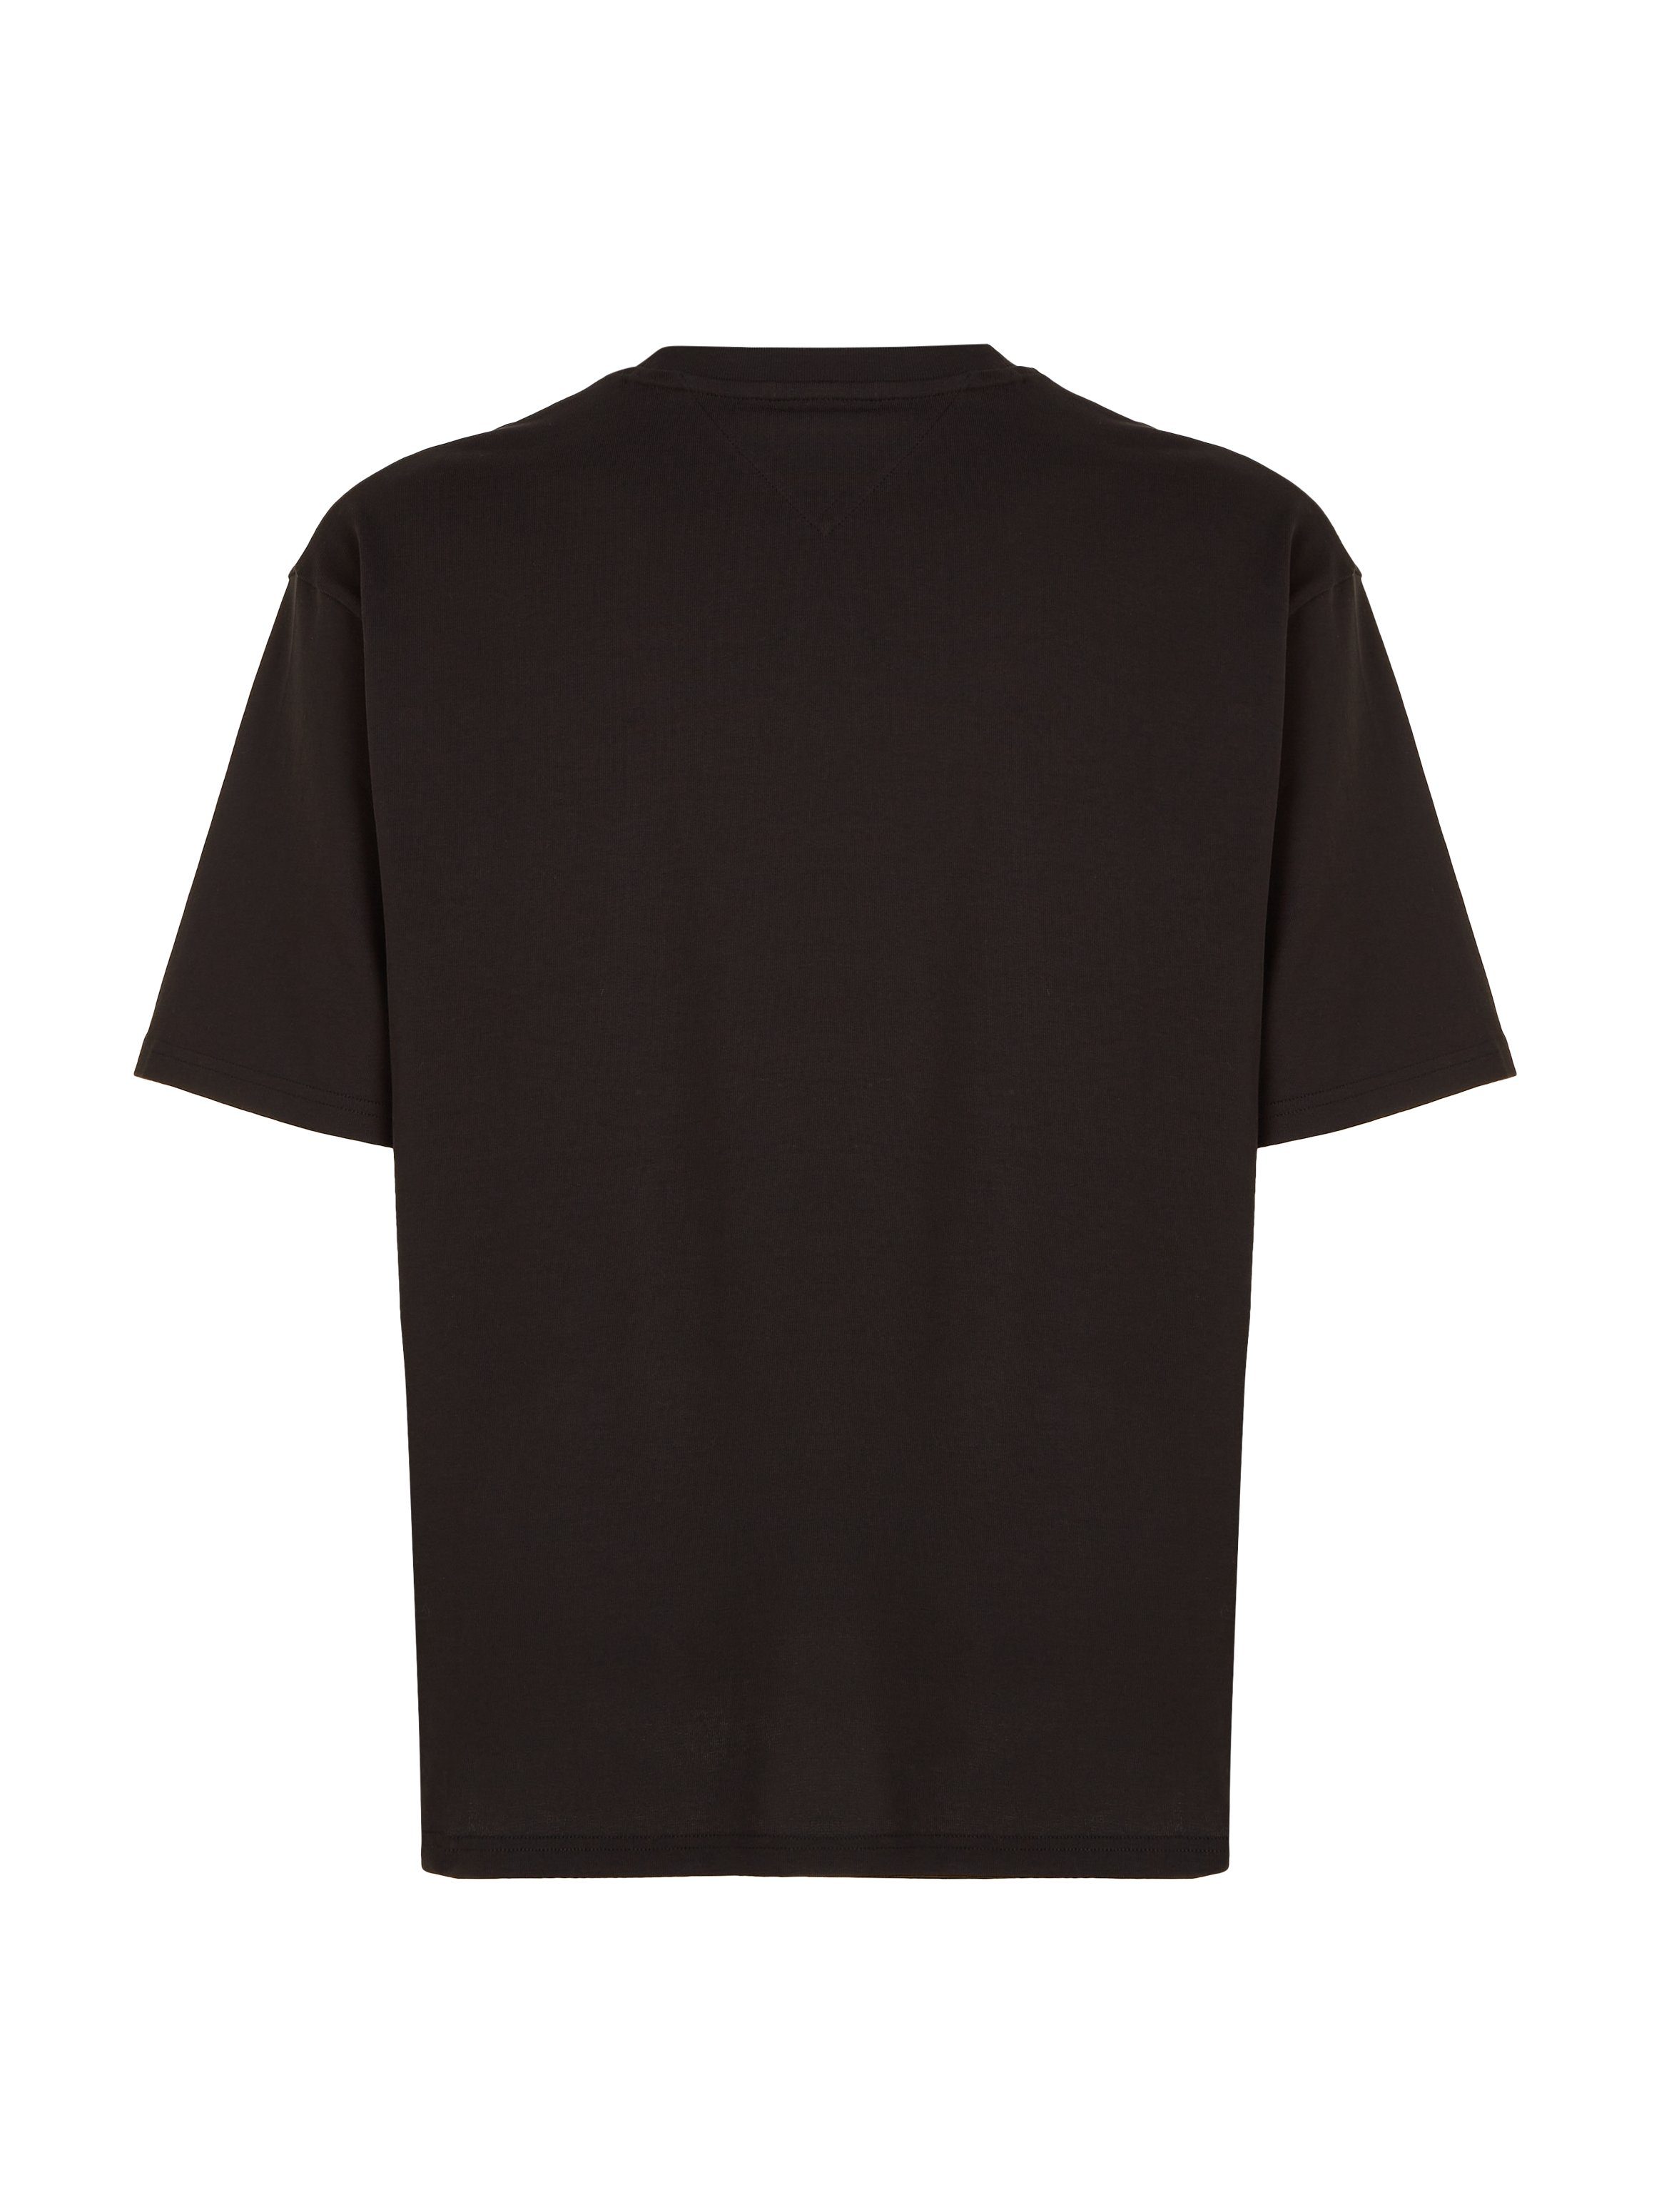 Tommy Jeans T-Shirt TJM OVZ Black mit TEE Rundhalsausschnitt EXT BOLD CLASSICS